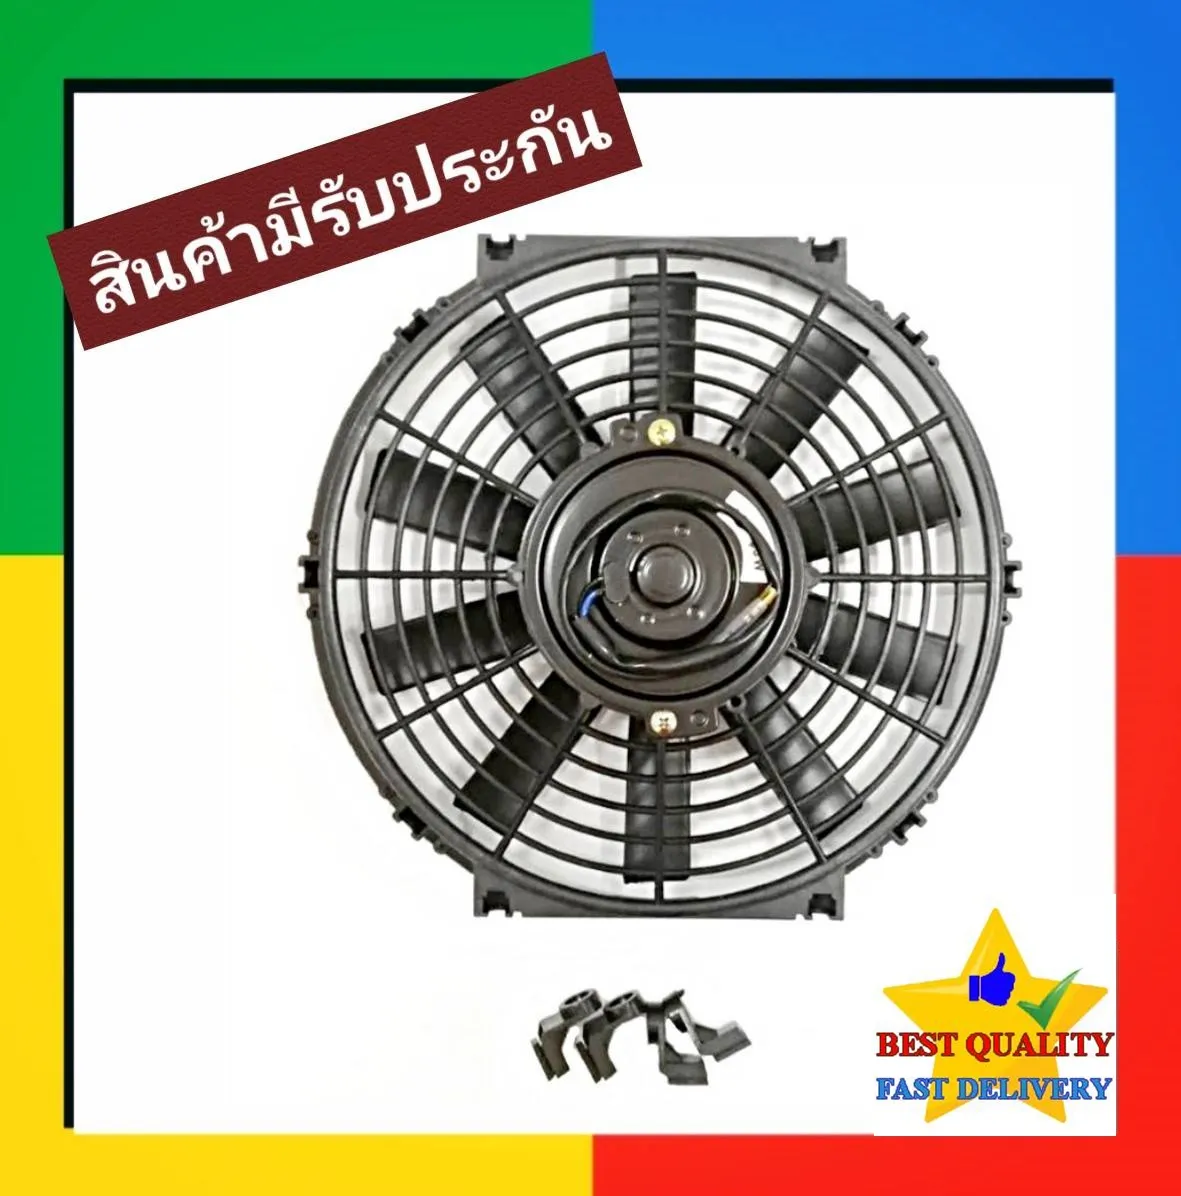 พัดลม ระบายความร้อน 10 นิ้ว โครงพลาสติก 12V (แบบดูด) Cooling Fan พัดลมระบายความร้อน แผงคอล์ยร้อนแอร์ 10 ใบ บาง 12โวล พัดลมเป่าแผงคอล์ยร้อนแอร์  ดูดควัน ดัดแปลง ระบาย ความร้อน หม้อน้ำ แผง คอย ร้อน คอยล์ พัดลมแอร์ ไฟฟ้า รถยนต์ ใบพัด แอร์ แอร์รถ